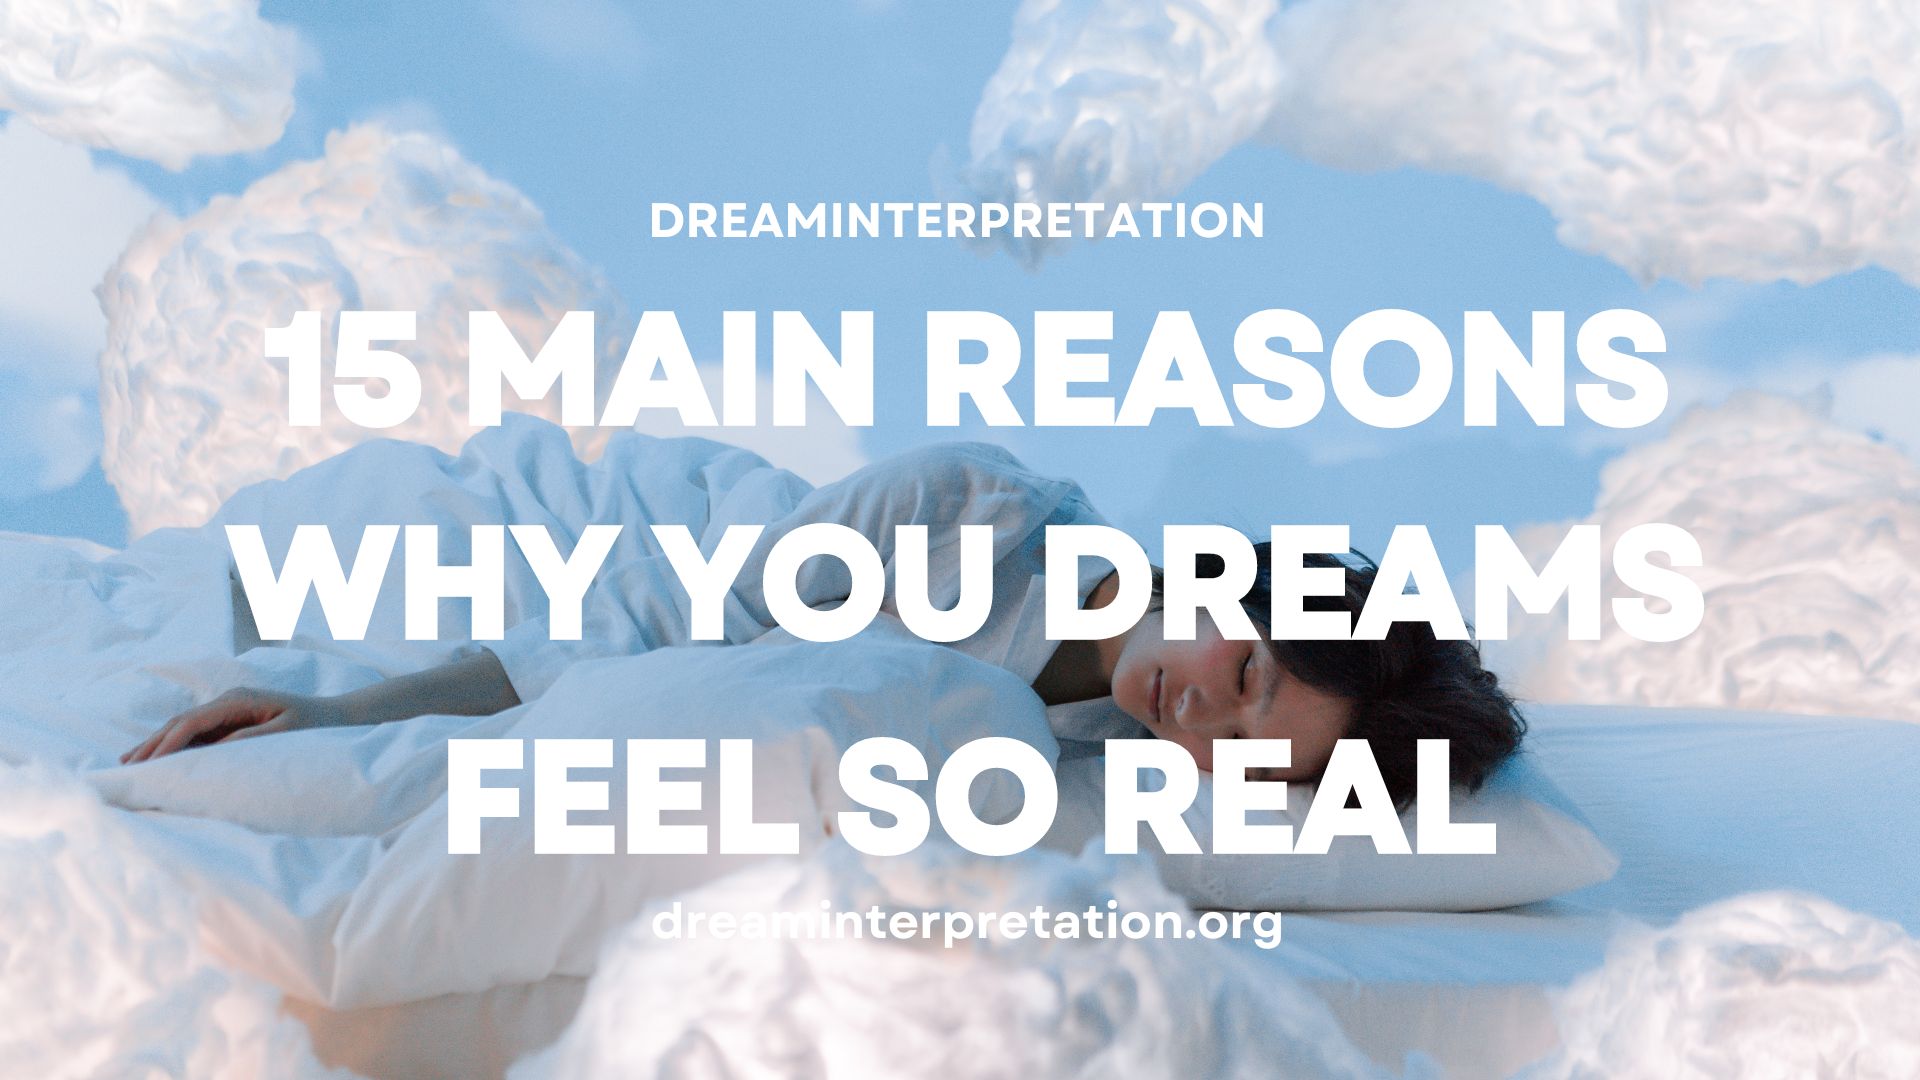 15 Main Reasons Why You Dreams Feel So Real